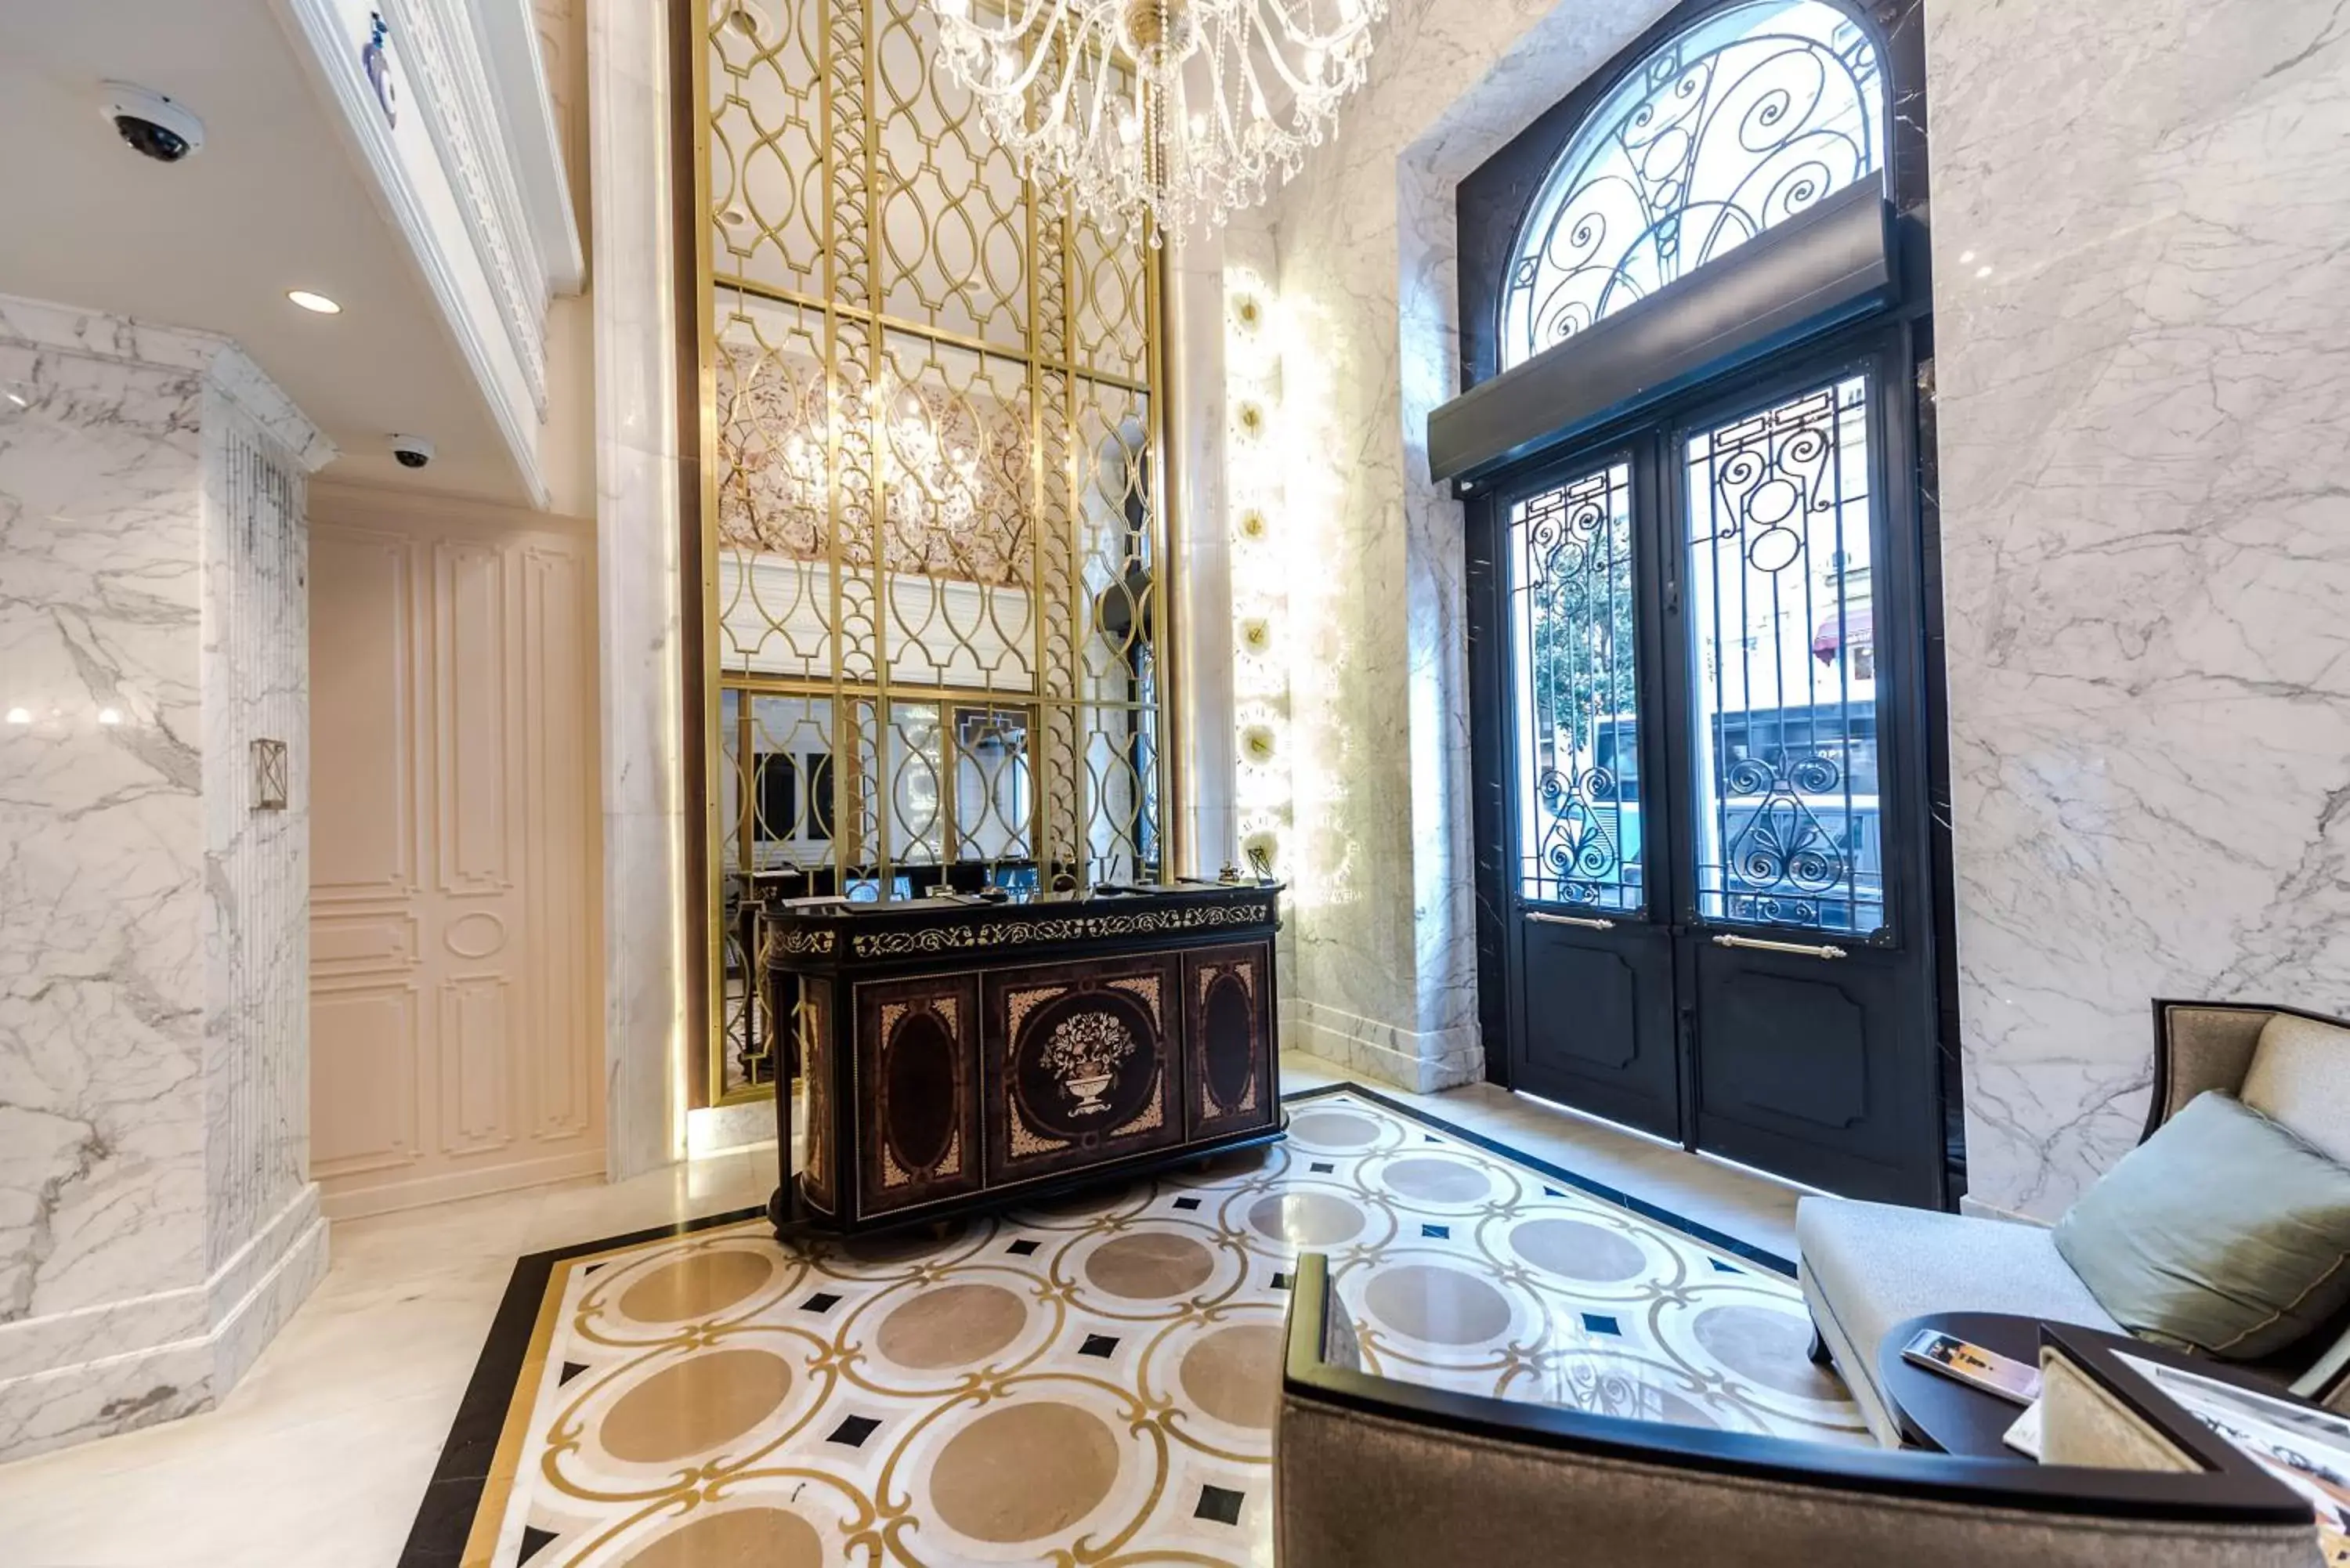 Lobby or reception, Bathroom in Arcade Hotel Istanbul